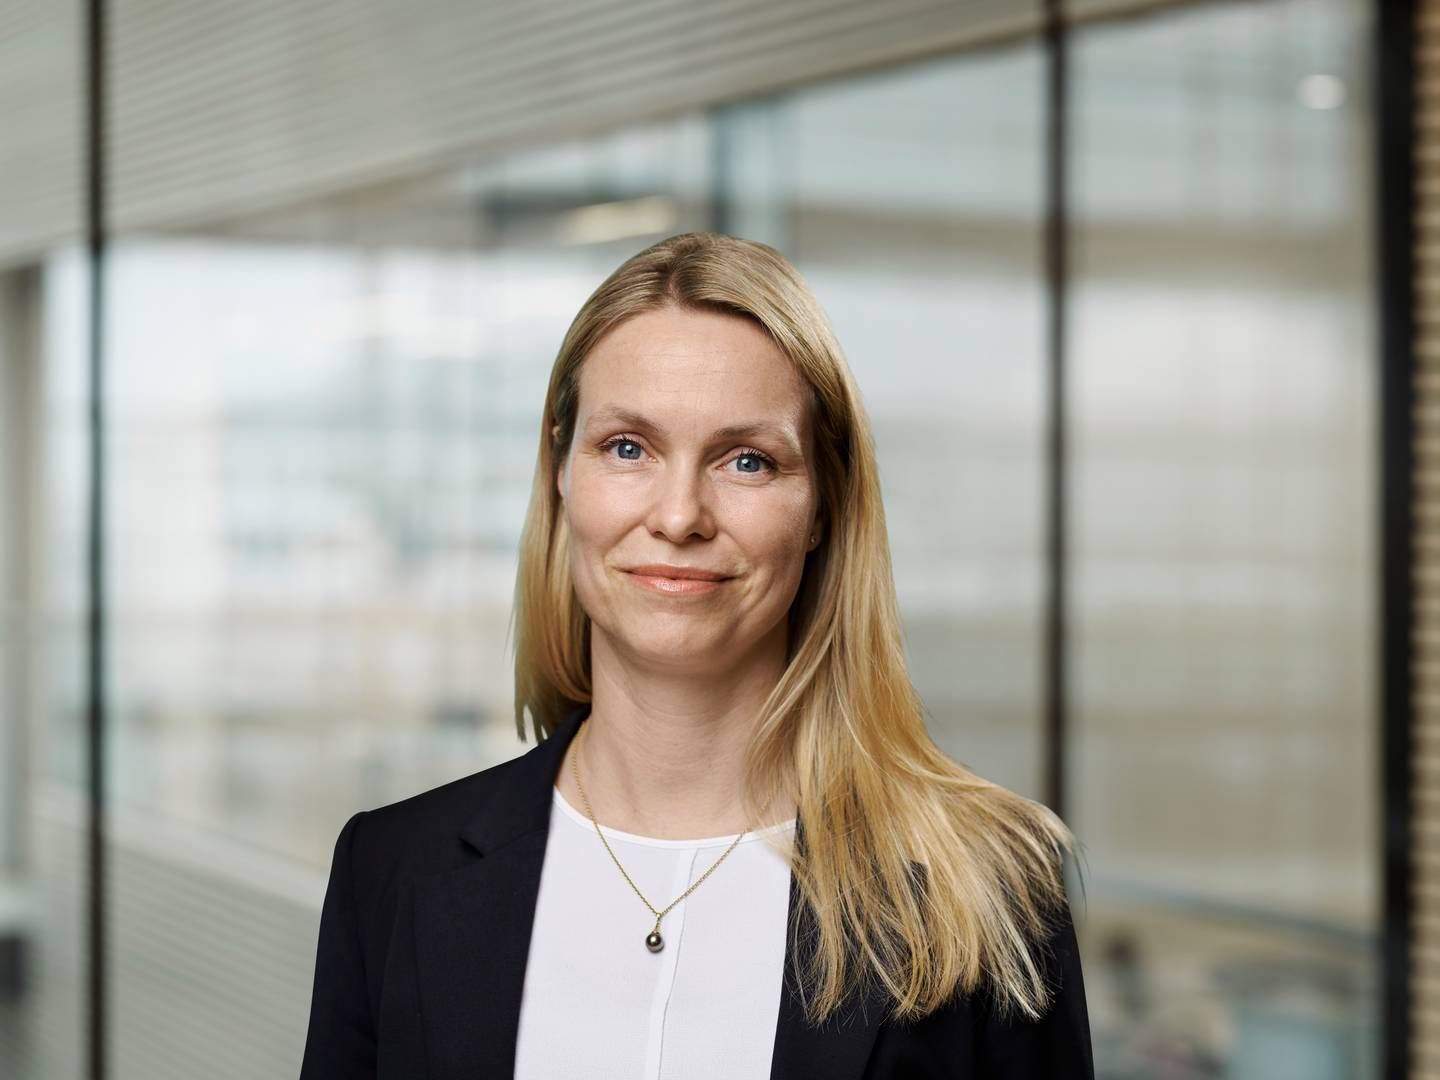 Kristin Parello-Plesner fratræder stillingen som chef for bæredygtighed i Danske Bank. | Foto: PR / Danske Bank